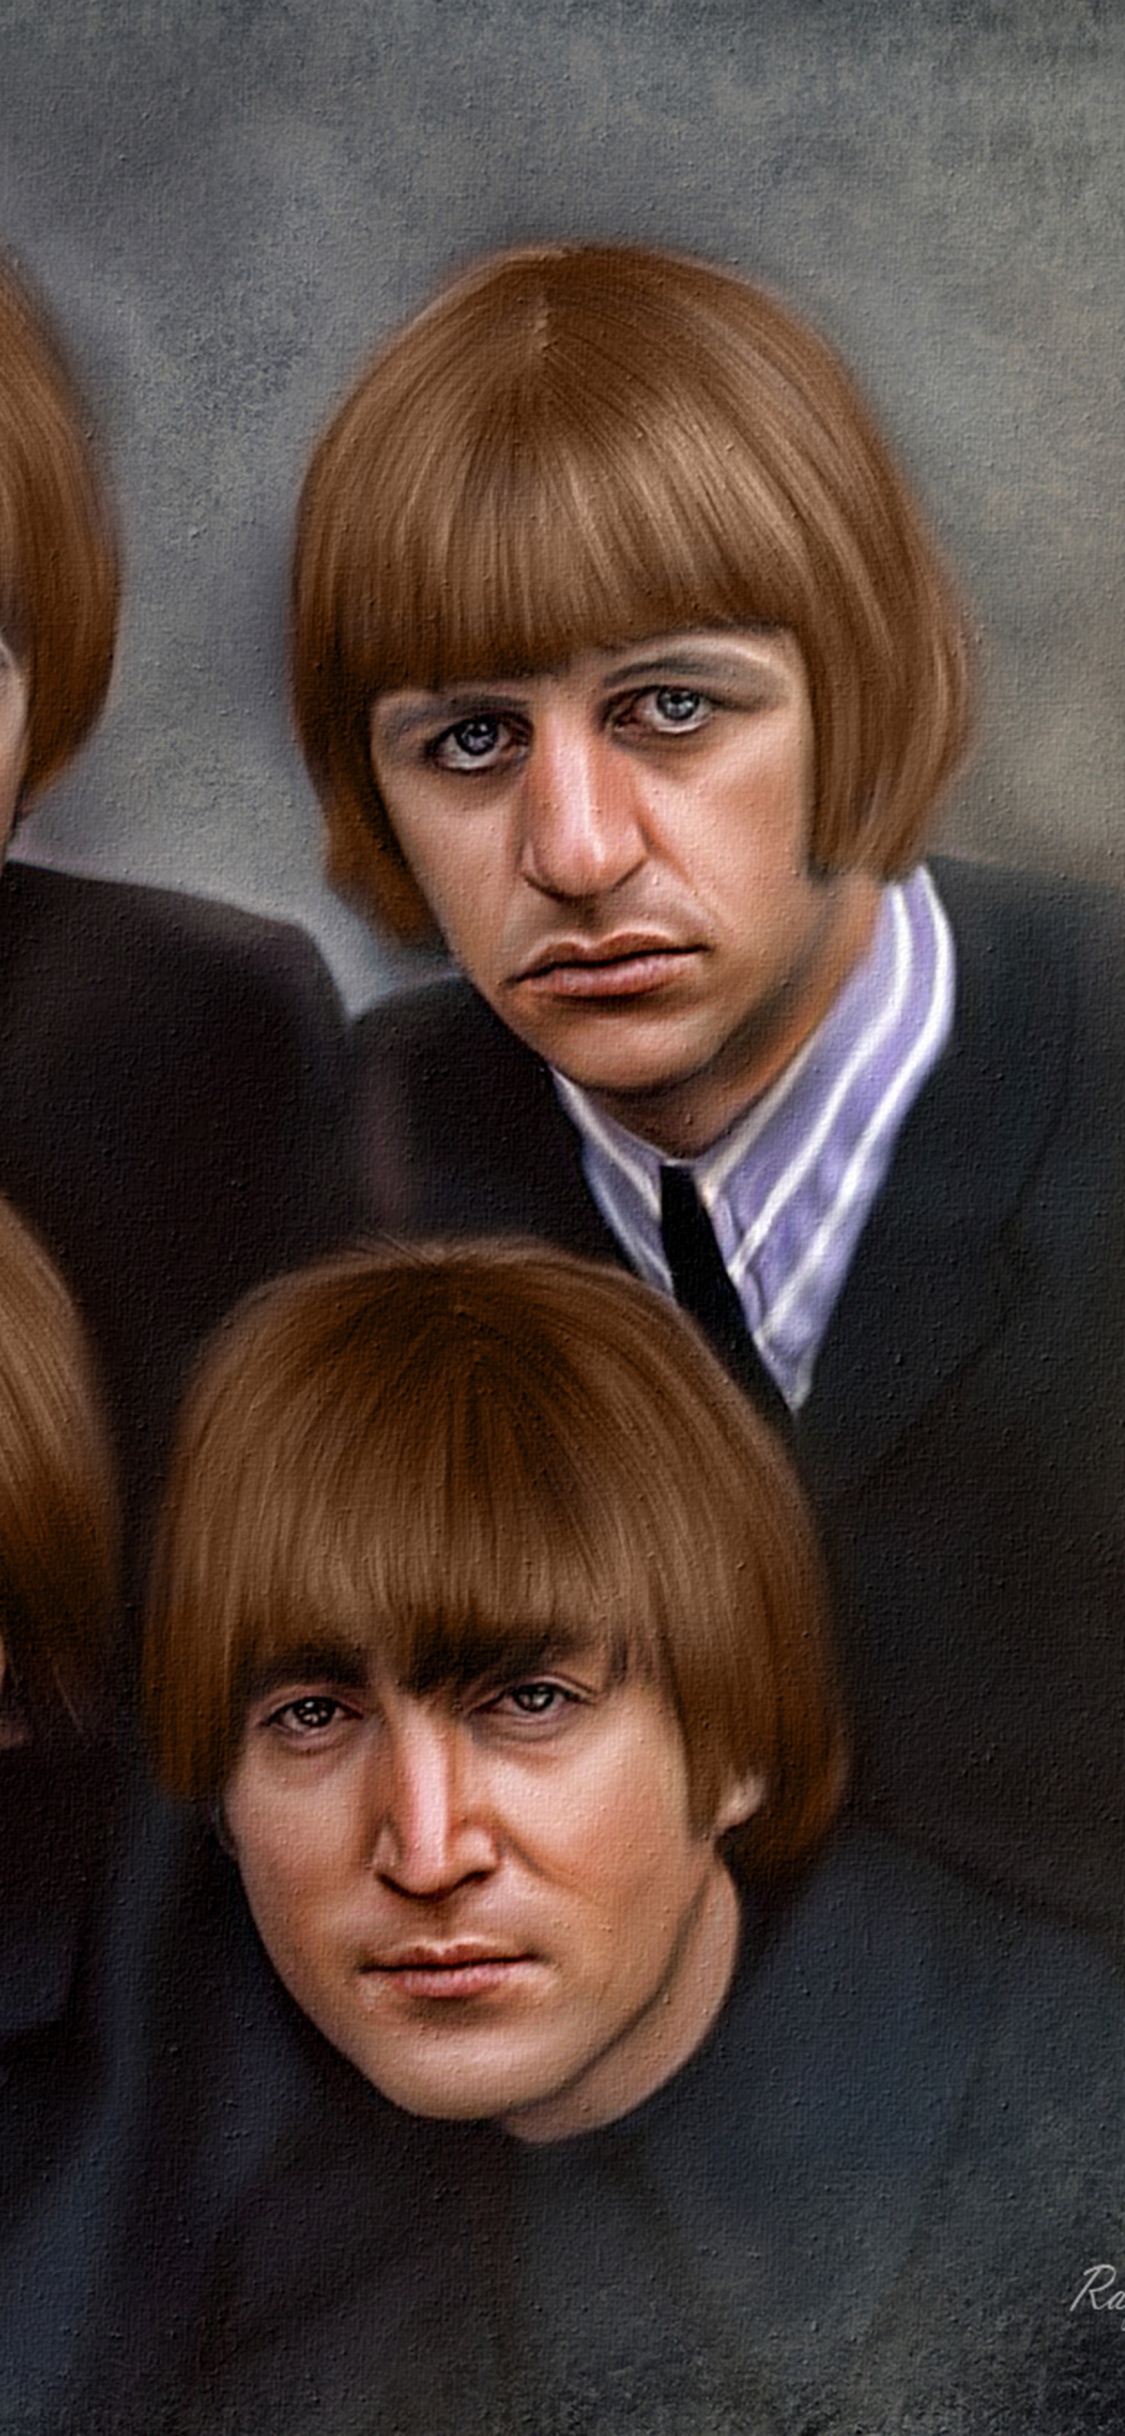 约翰*列侬, 保罗*麦卡特尼, 乔治*哈里森, Ringo Starr, 披头士 8x10 壁纸 1125x2436 允许